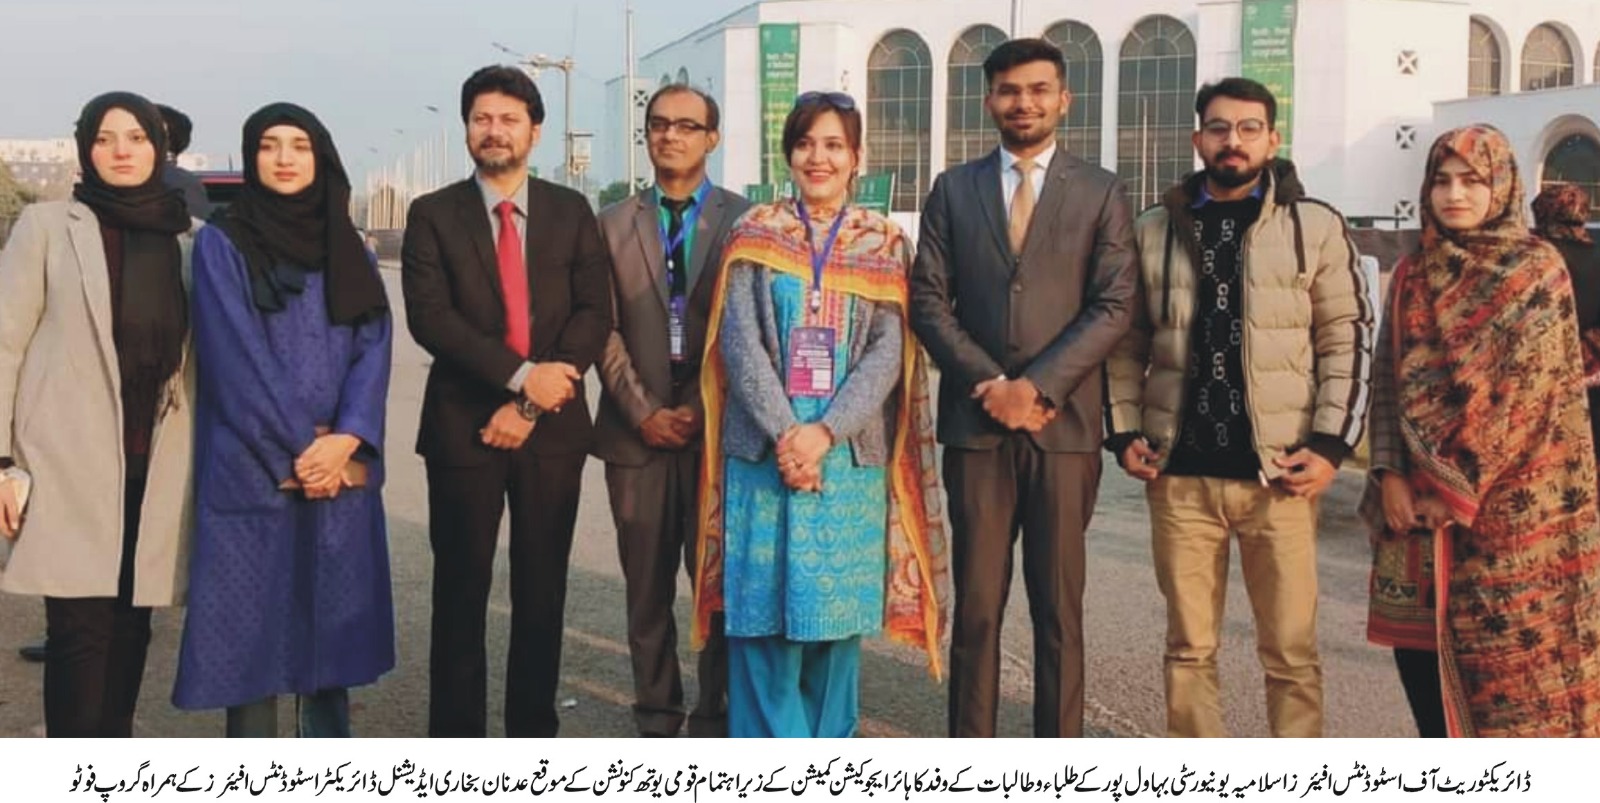 DSA delegation visit islamabad (urdu 2)